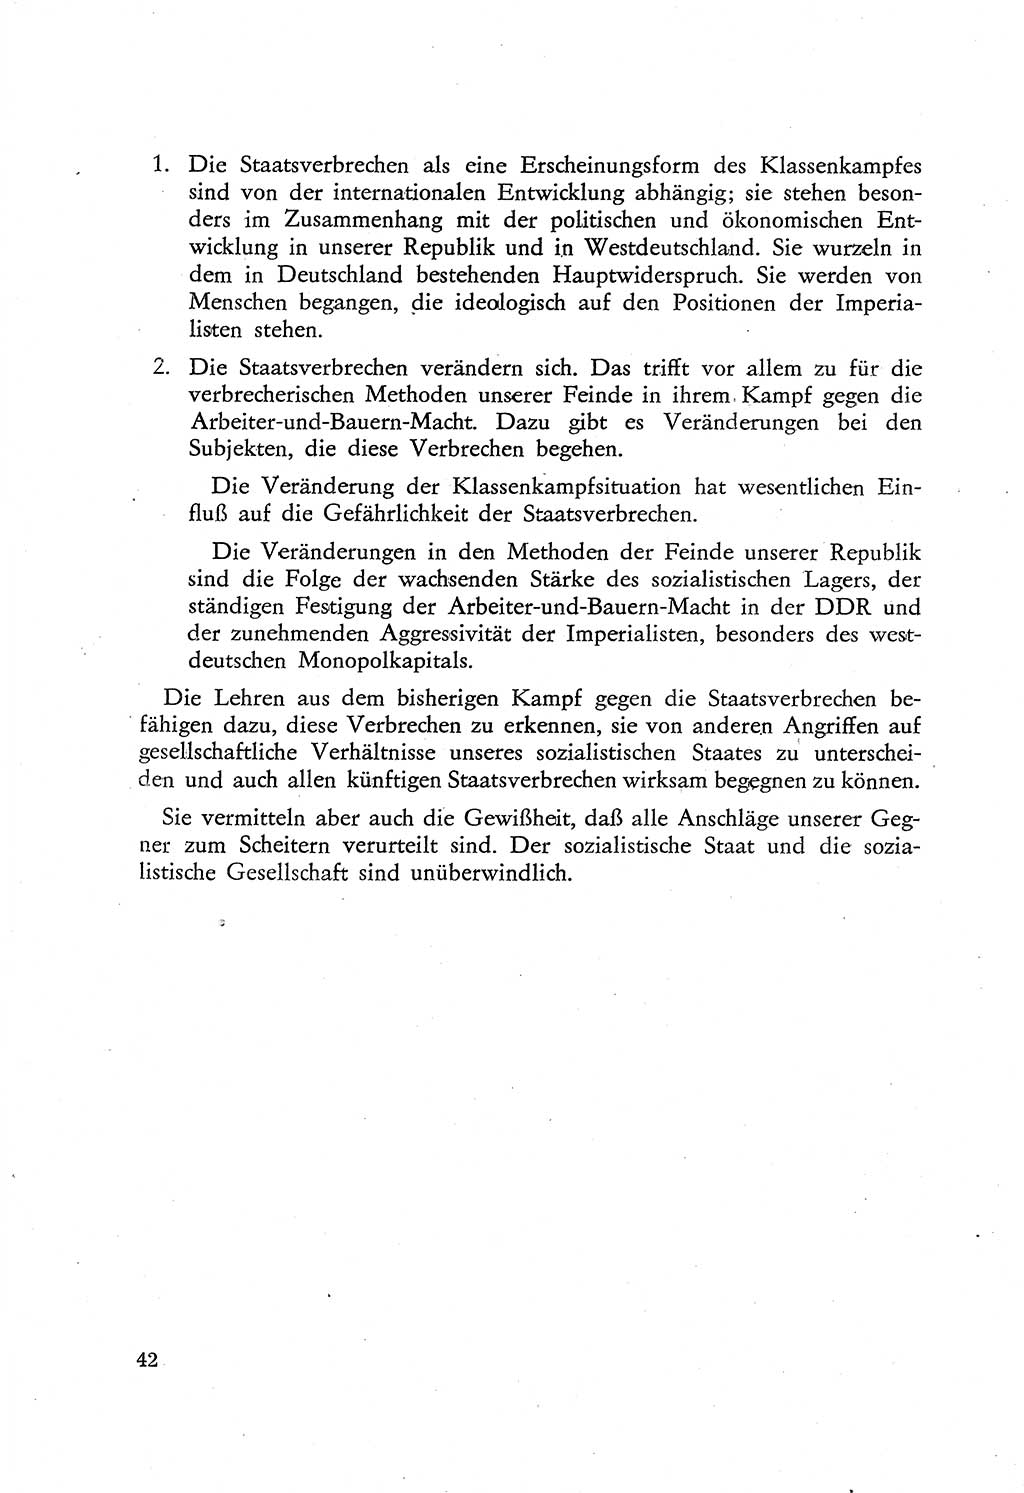 Beiträge zum Strafrecht [Deutsche Demokratische Republik (DDR)], Staatsverbrechen 1959, Seite 42 (Beitr. Strafr. DDR St.-Verbr. 1959, S. 42)